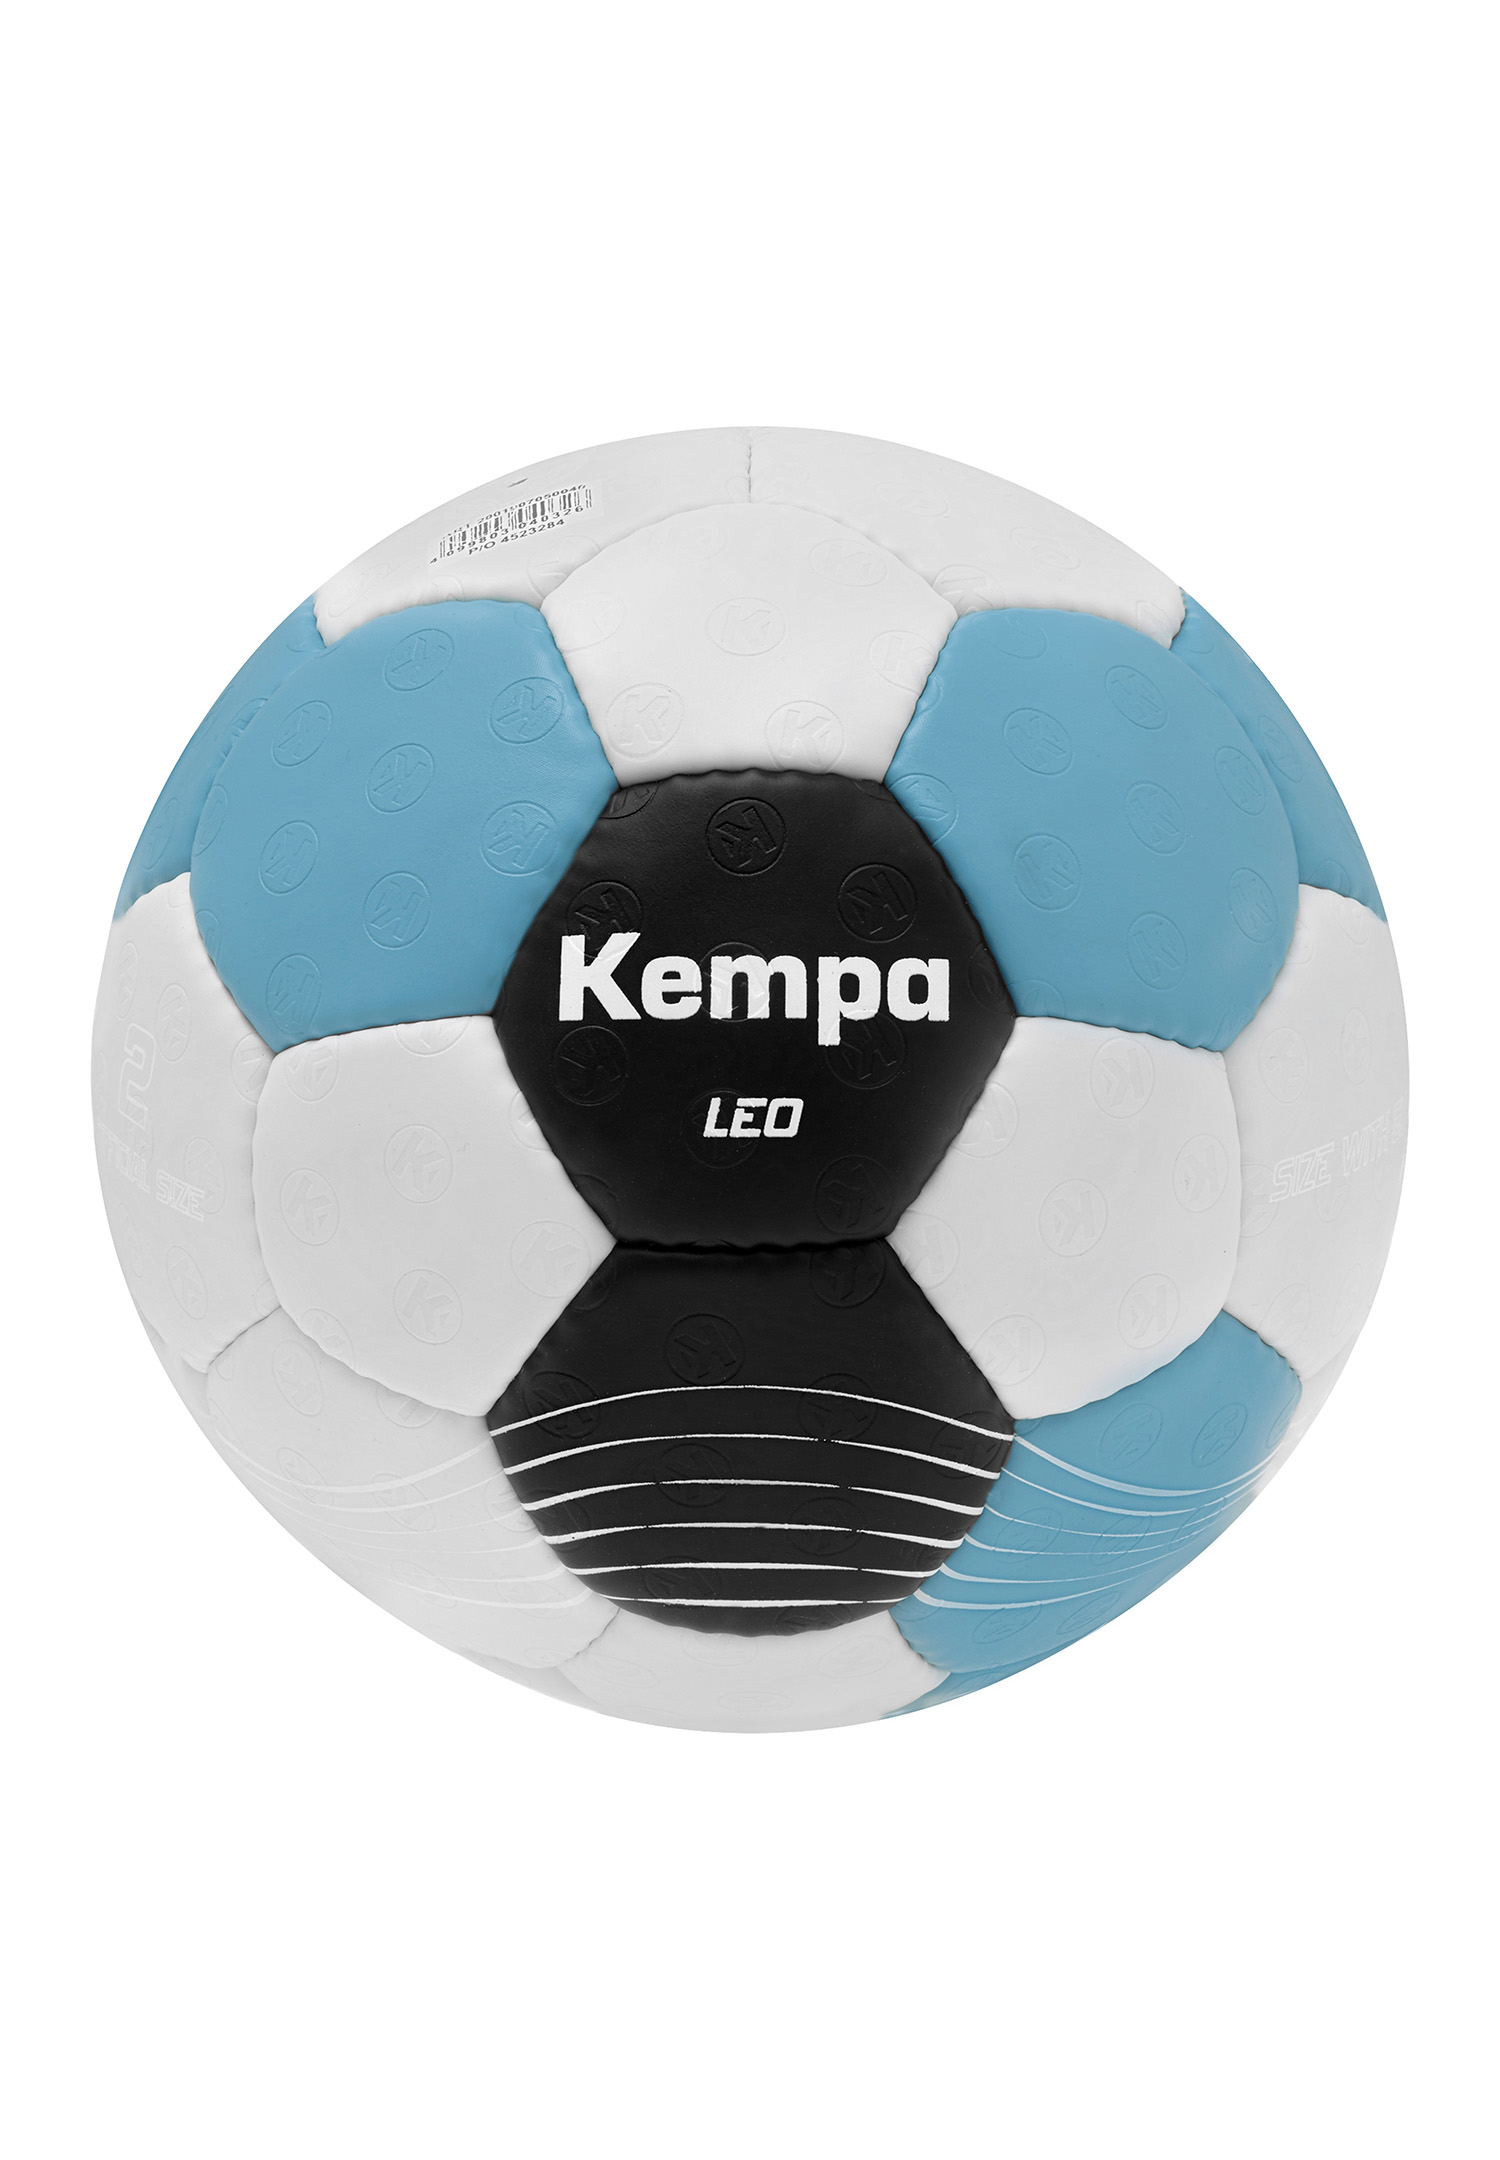 Kempa Handball Leo Size 0 200190705 grey/black